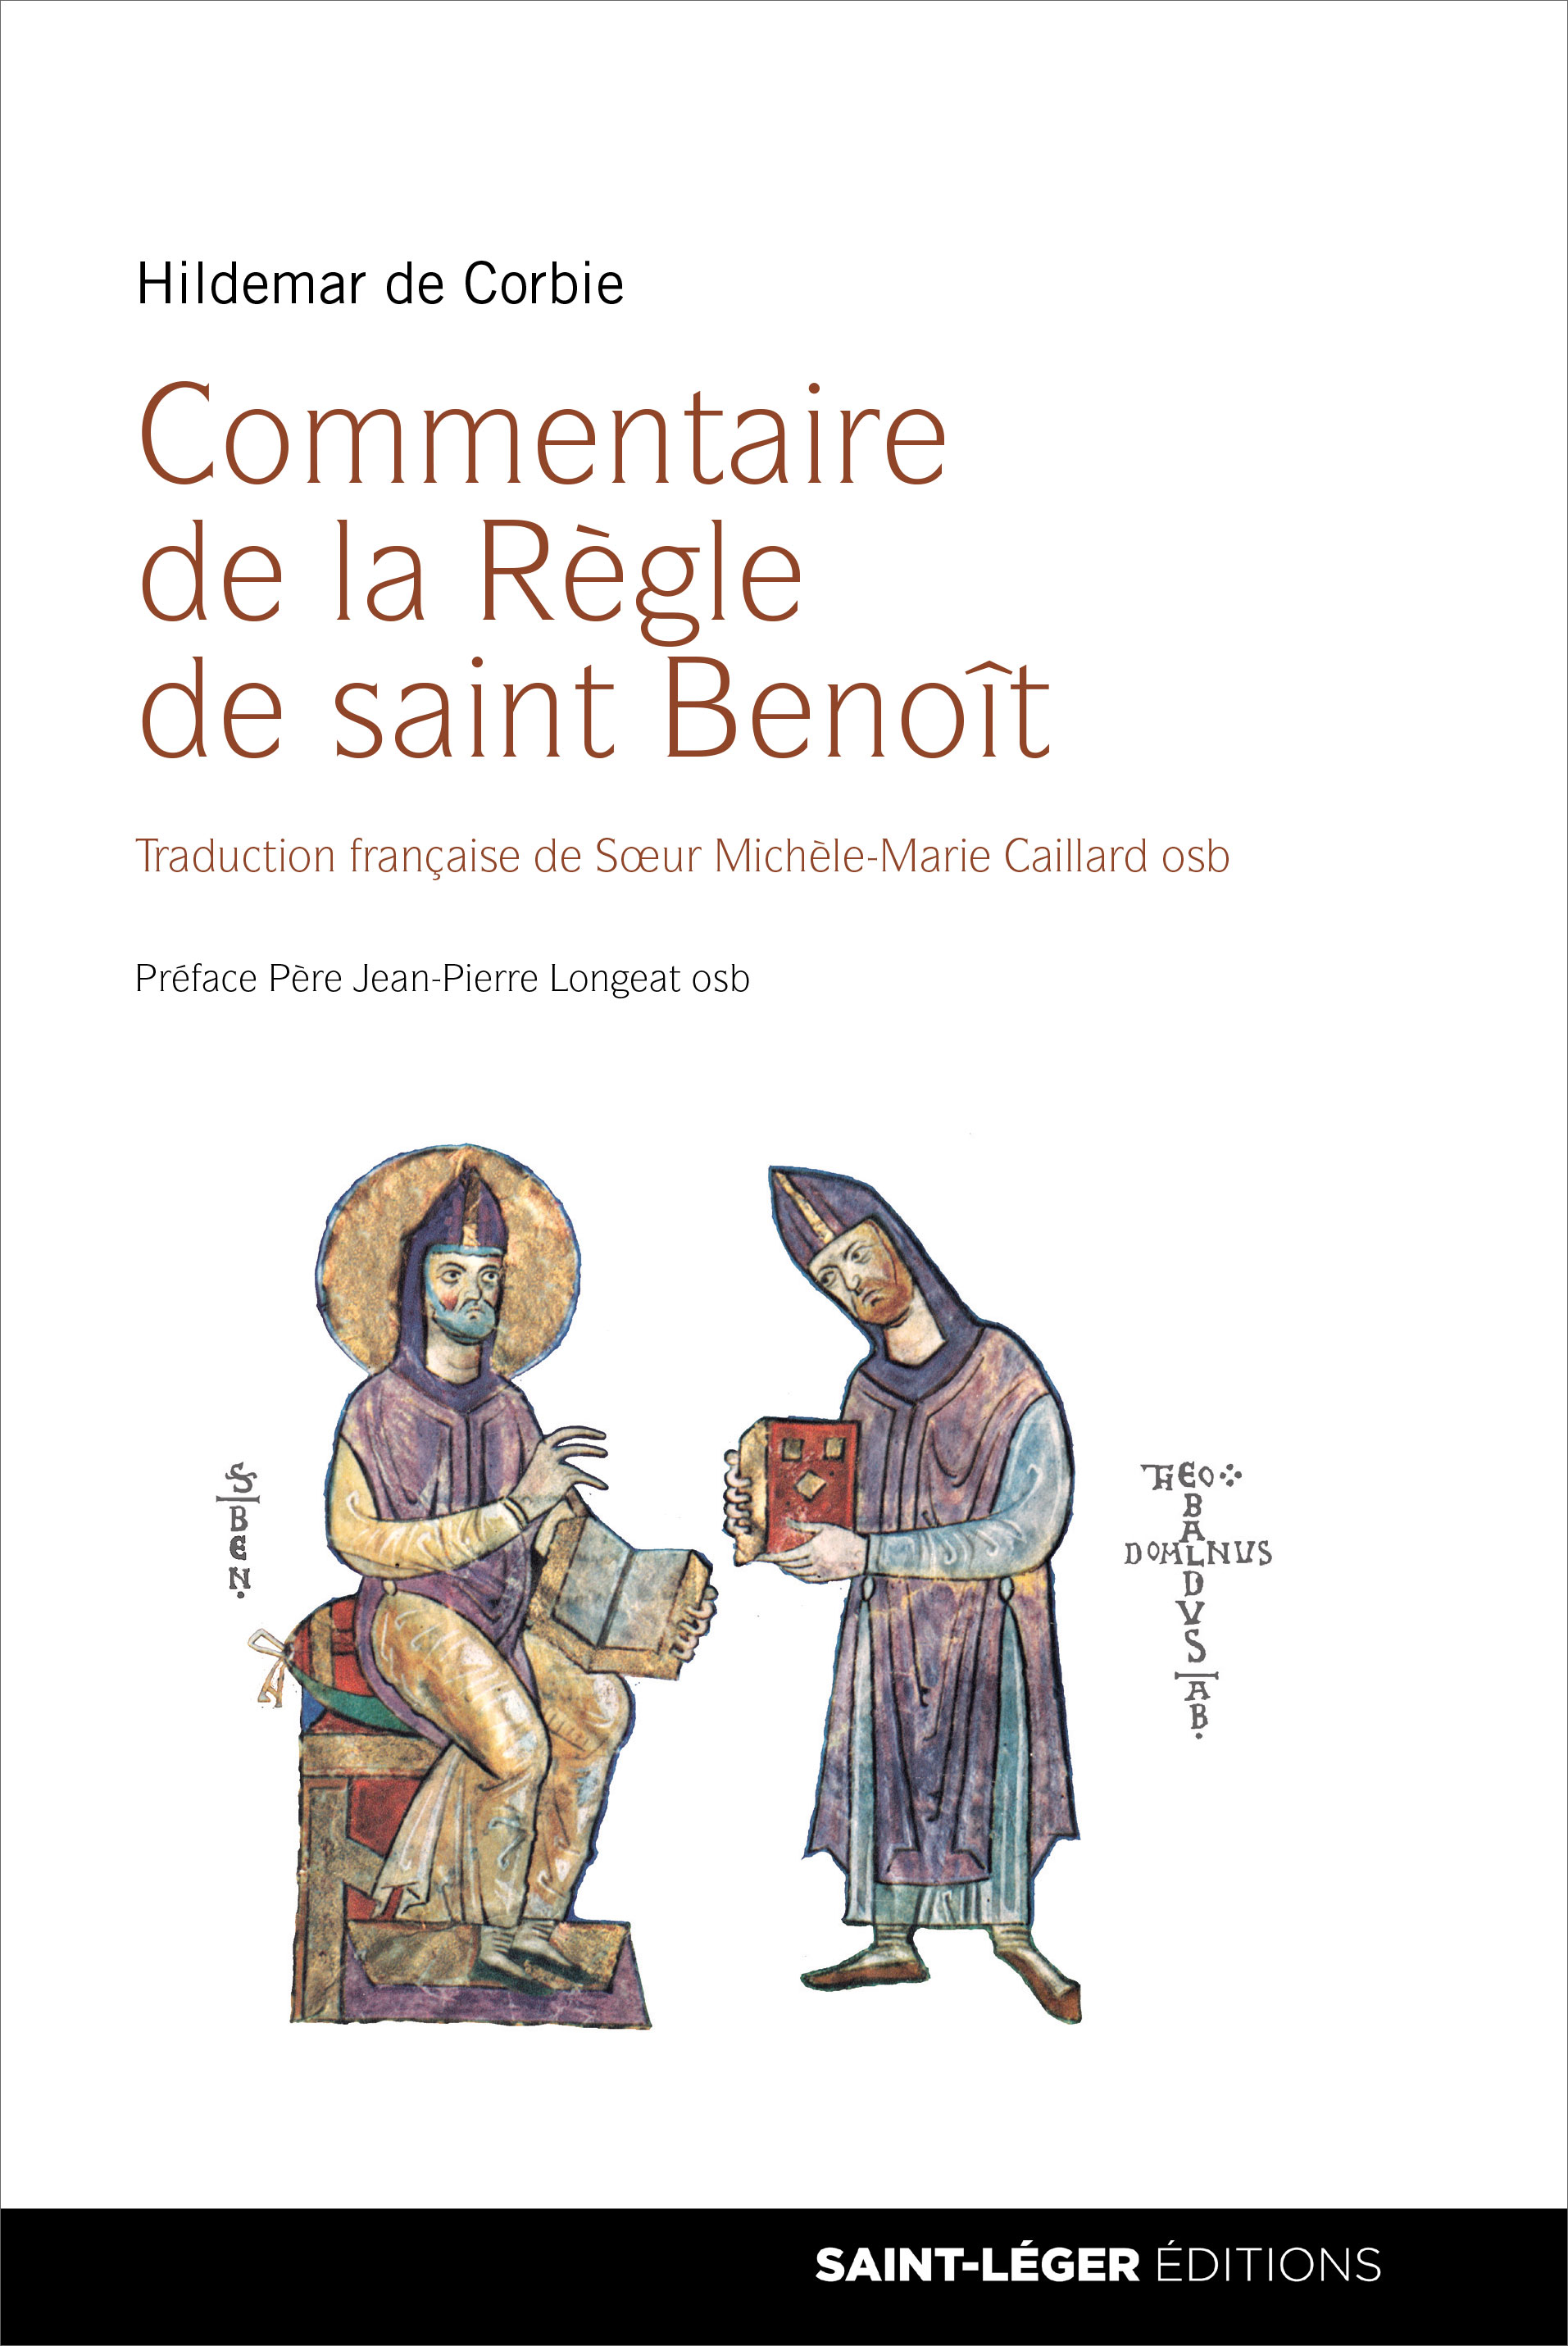 Hildemar de Corbie, commentaire de la rgle de saint Benot,